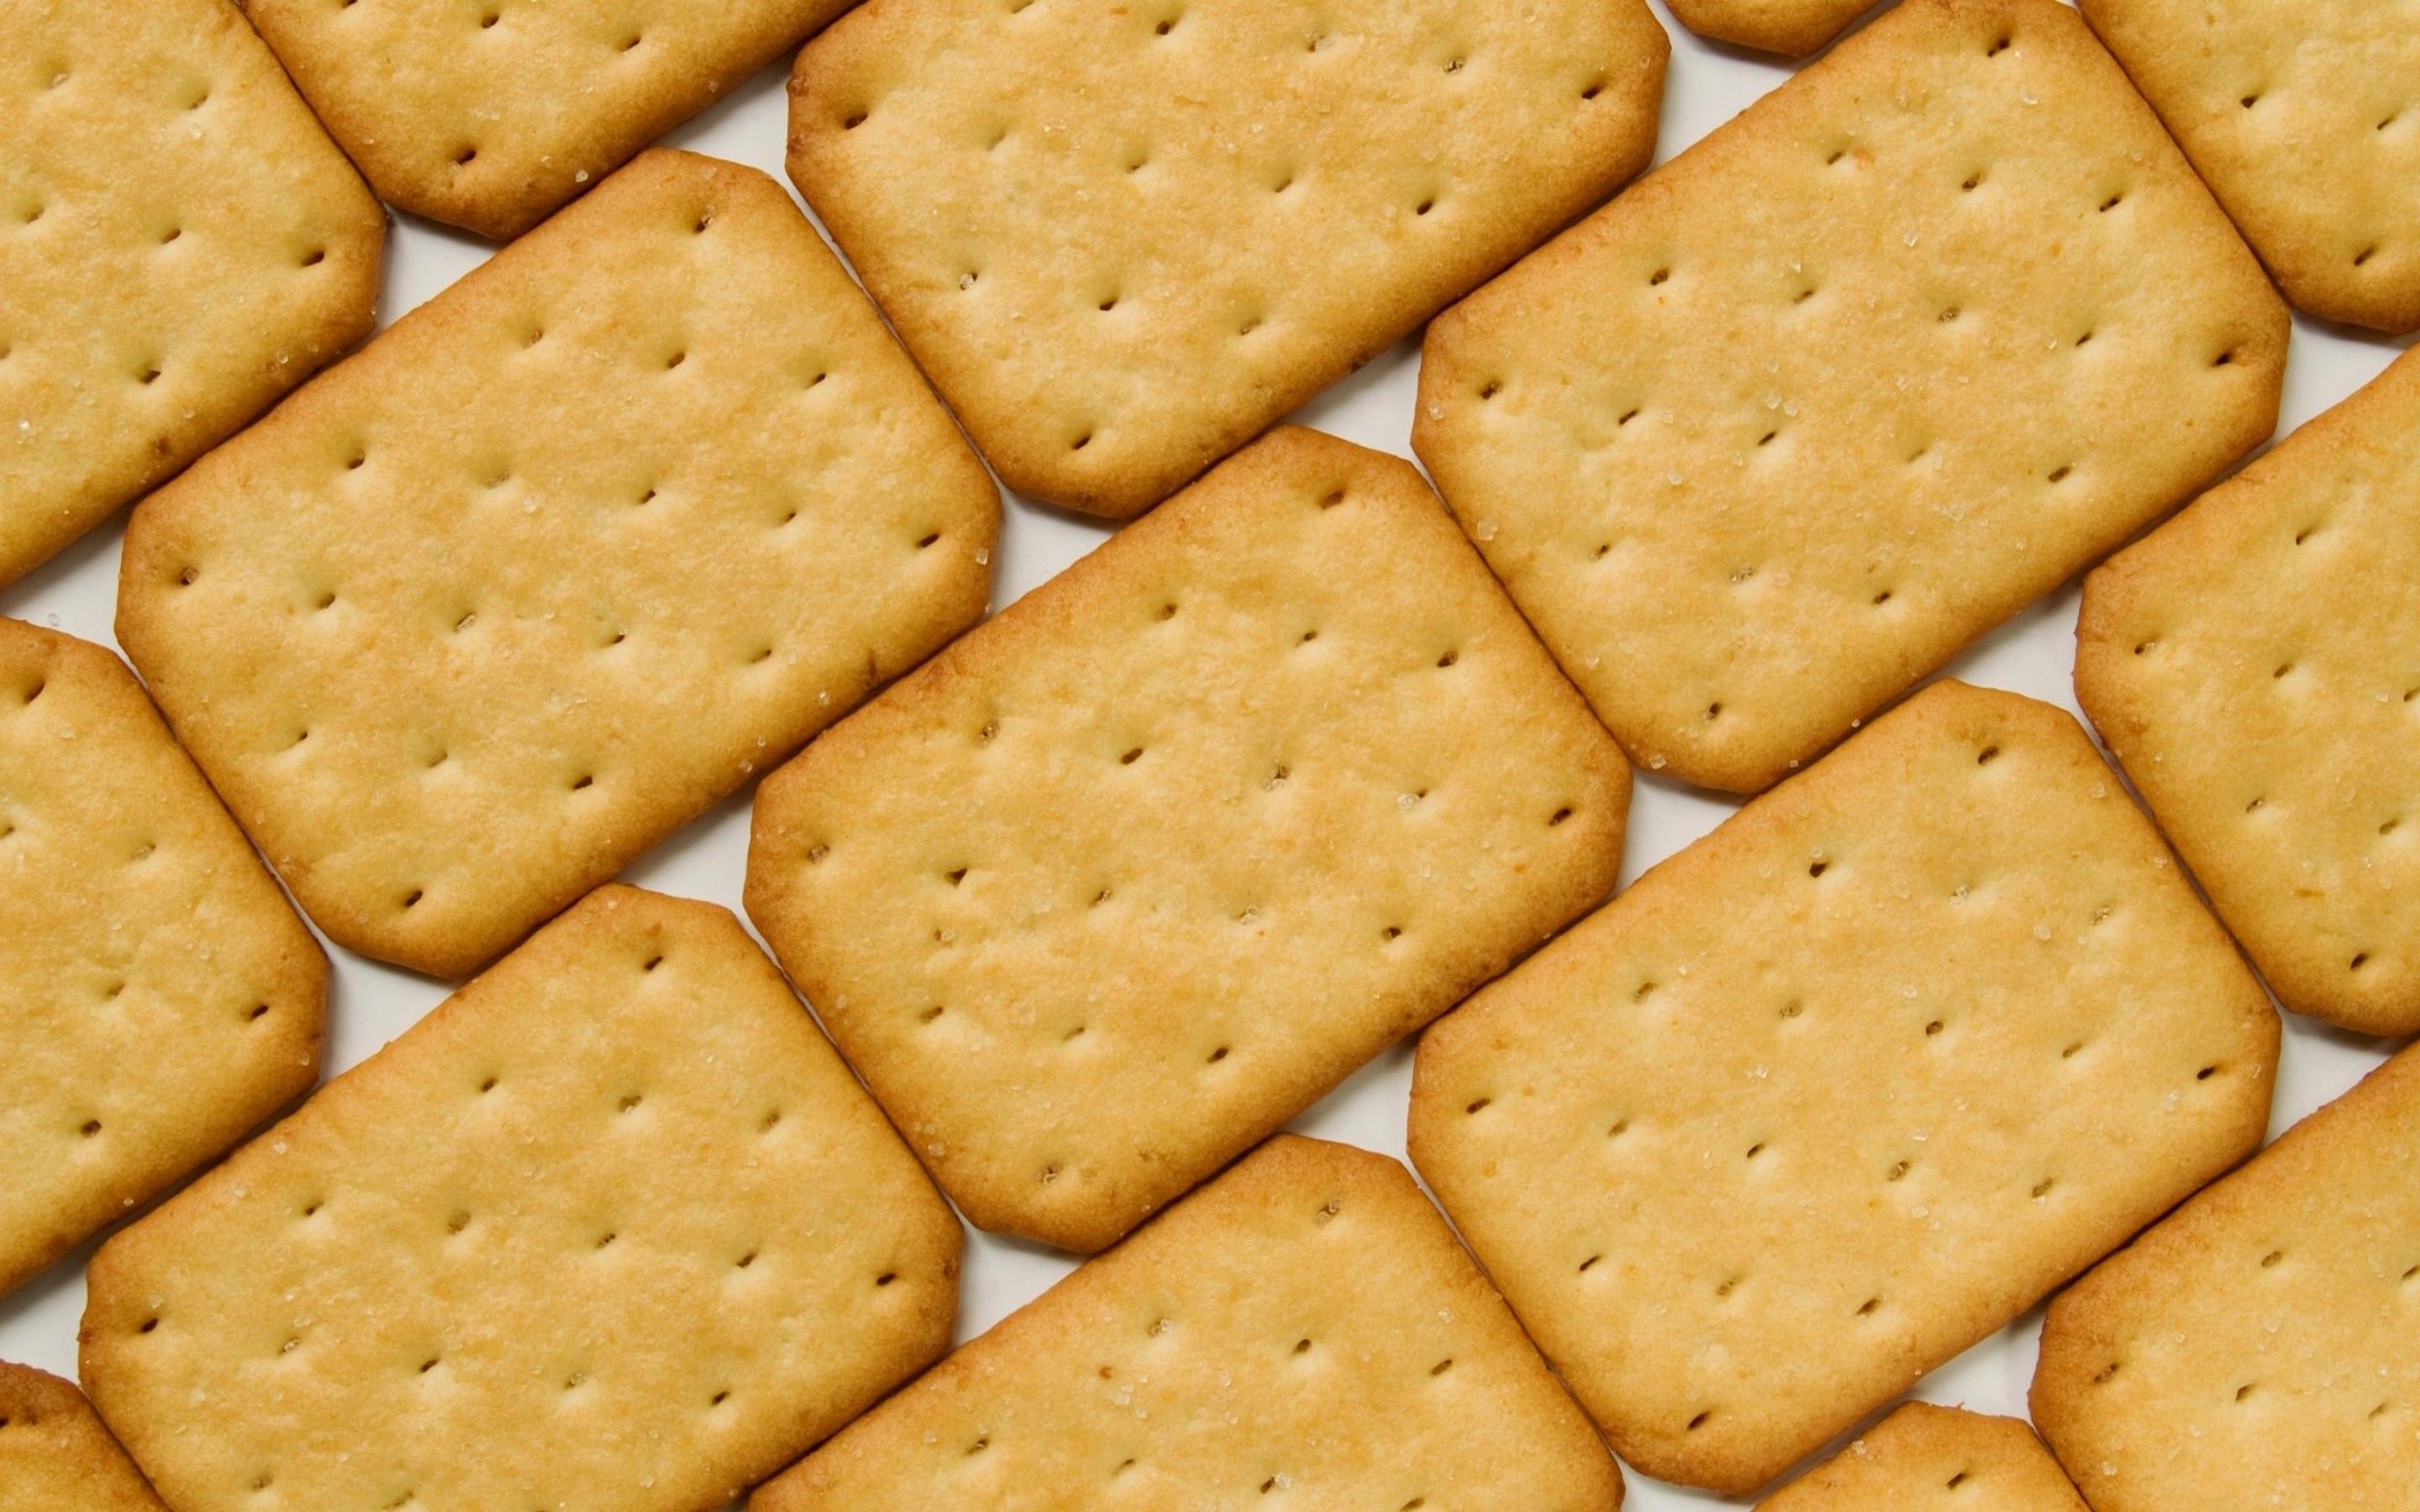 crackers wallpaper,cookies and crackers,food,snack,cracker,biscuit